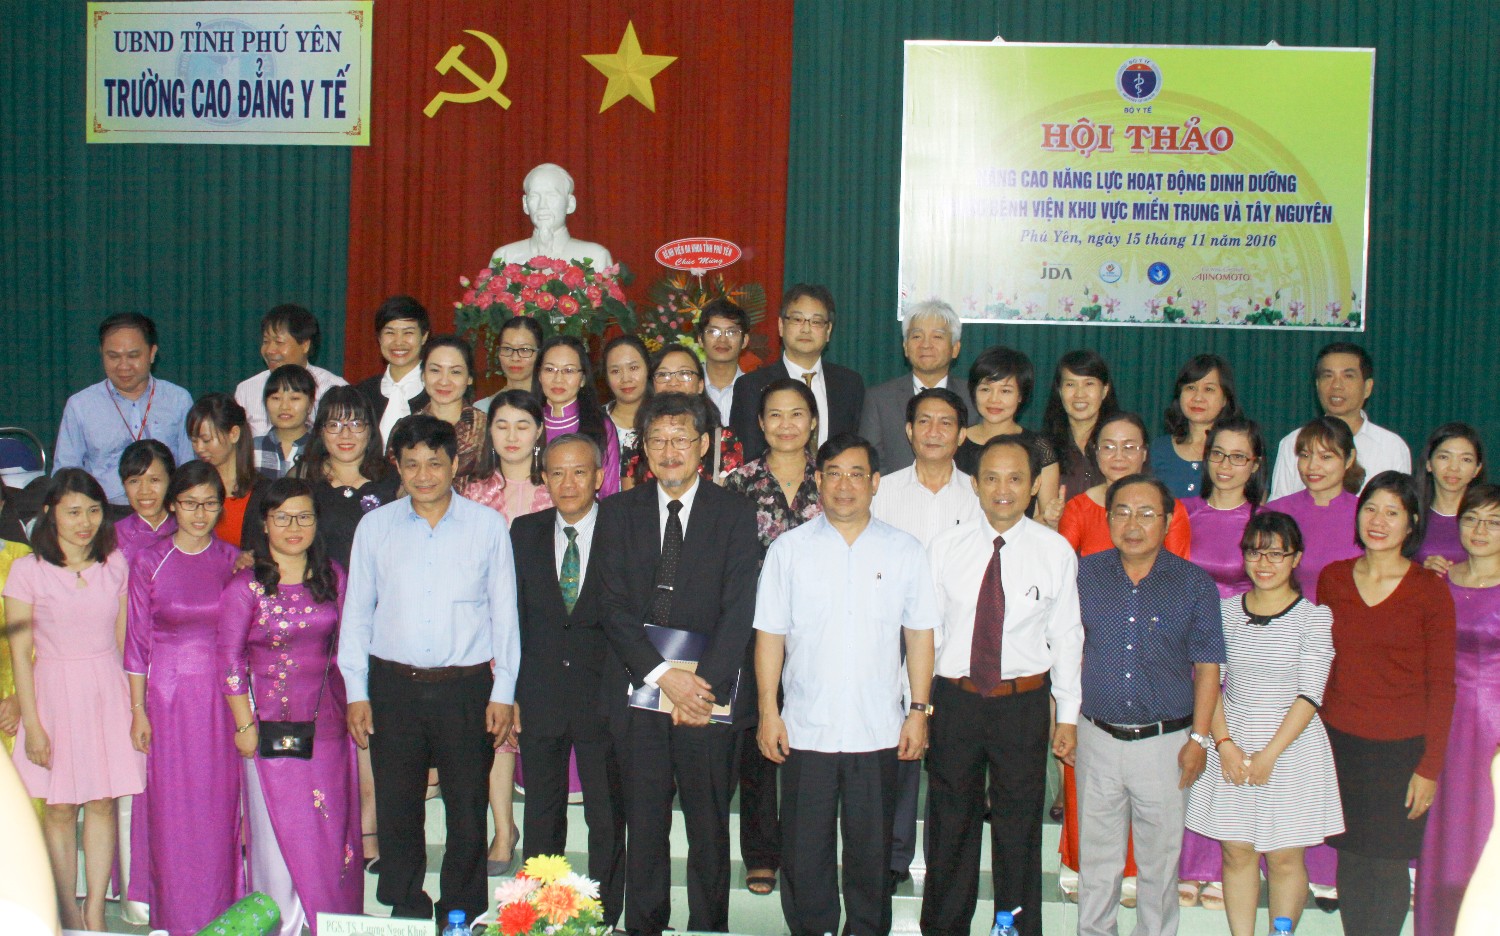 Hội thảo Nâng cao hoạt động Dinh dưỡng trong Bệnh viện Khu vực Miền Trung và Tây Nguyên